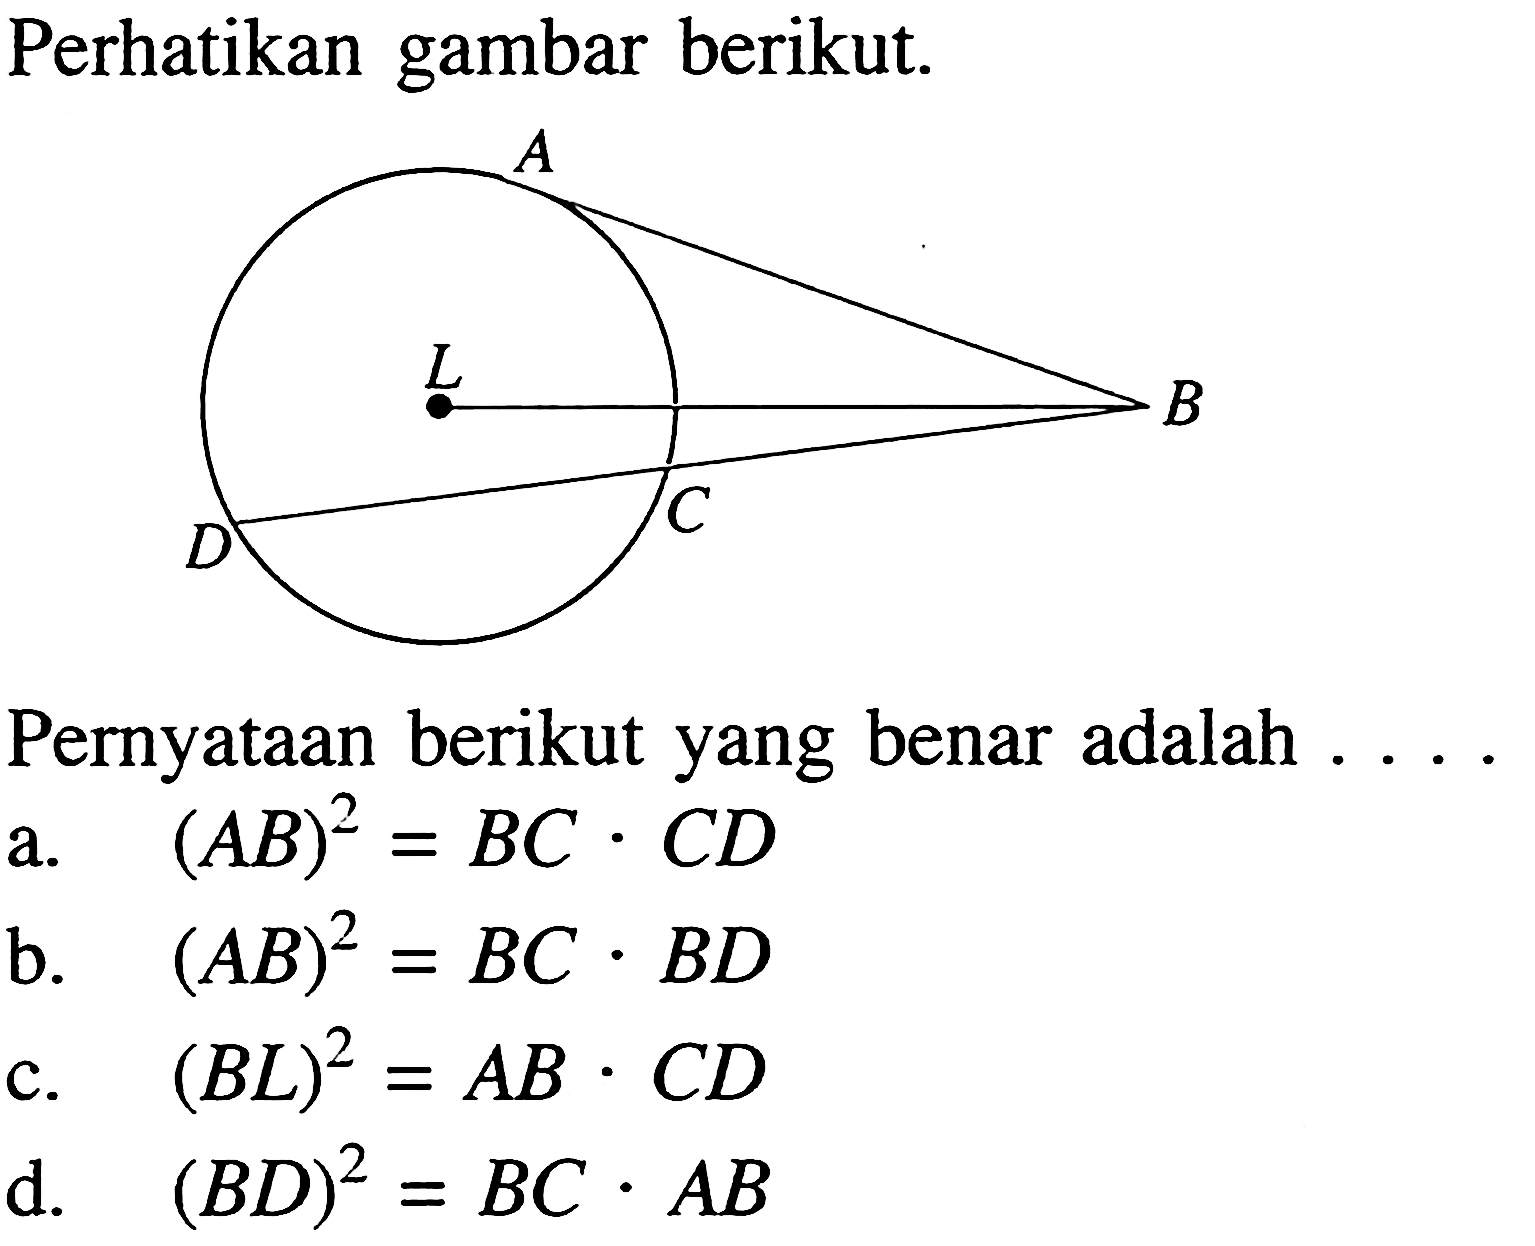 Perhatikan gambar berikut.AL BD CPernyataan berikut yang benar adalah .... a. (AB)^2=BC.CD 
b. (AB)^2=BC.BD 
c. (BL)^2=AB.CD 
d. (BD)^2=BC.AB 